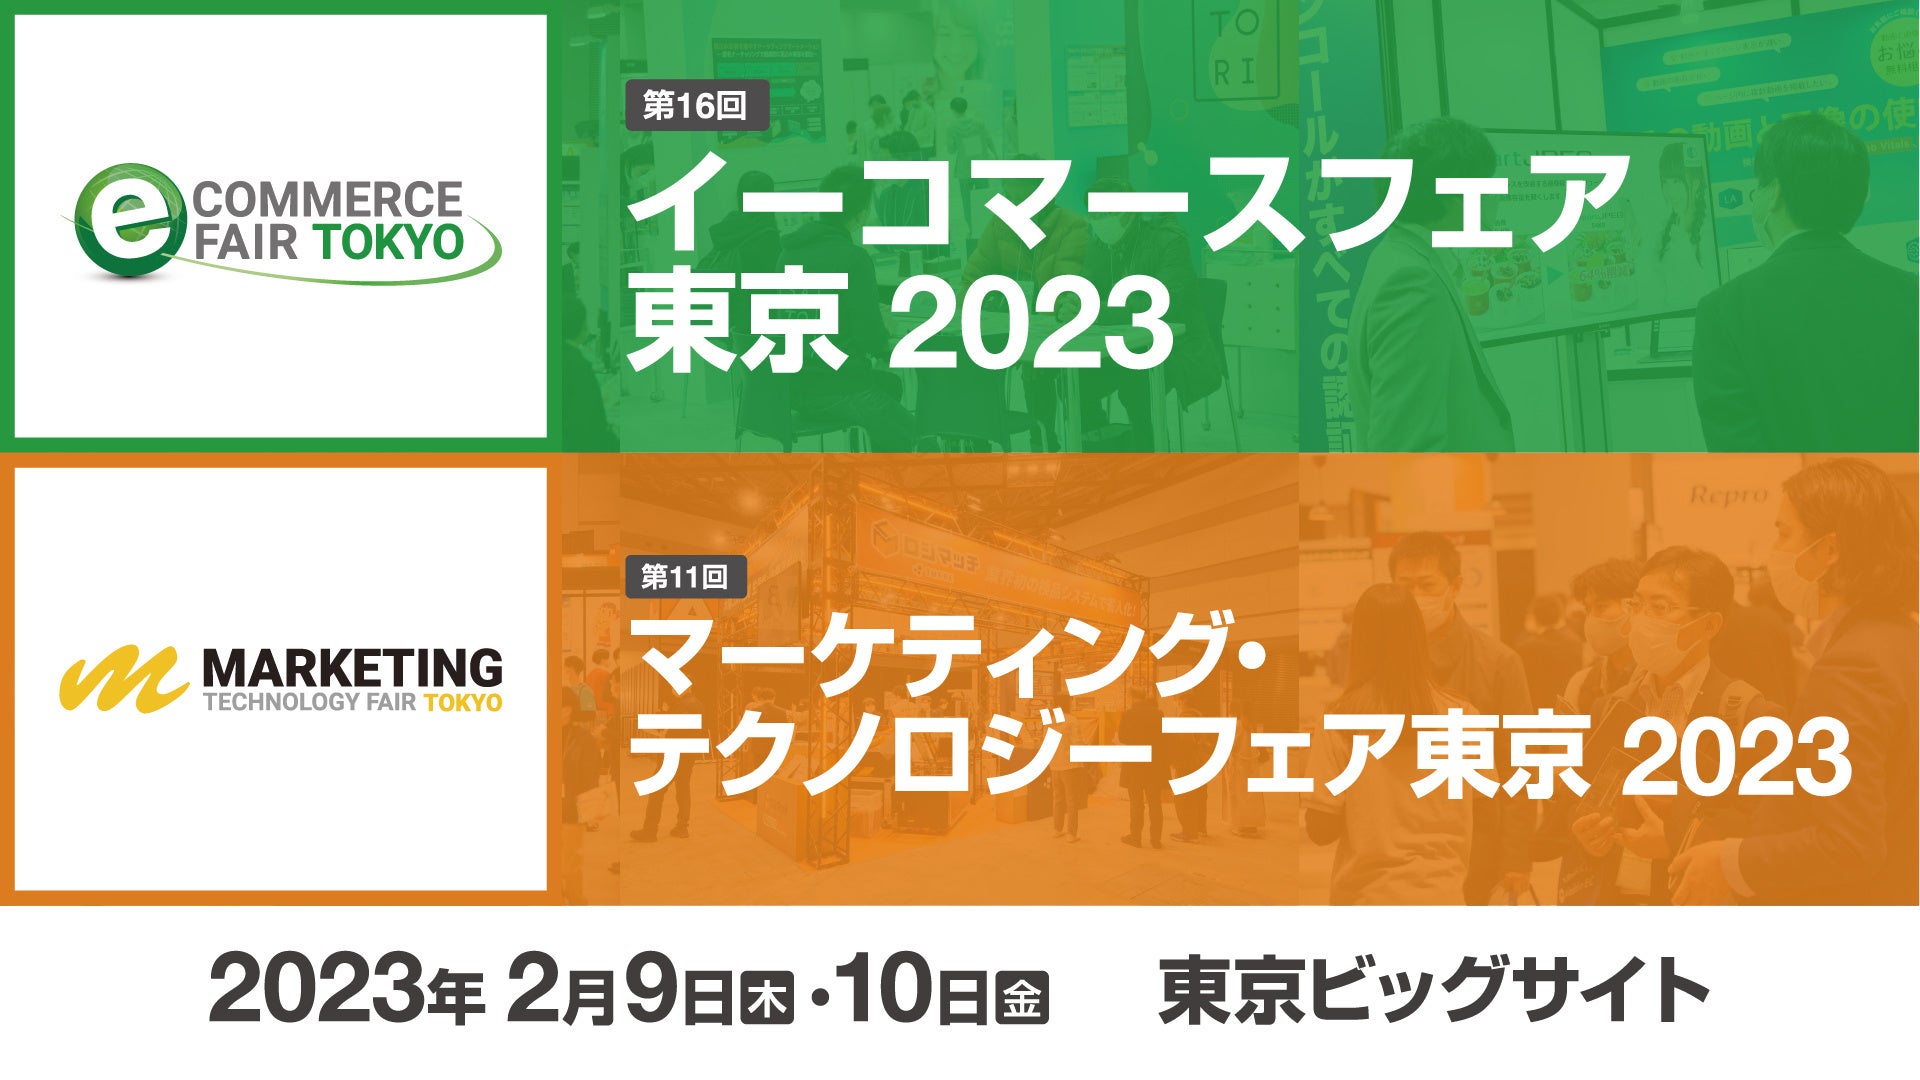 ネットショップ／マーケティングの悩みを解決できるセミナー&展示会「イーコマースフェア 東京 2023」「マーケティング・テクノロジーフェア 東京 2023」のサブ画像1